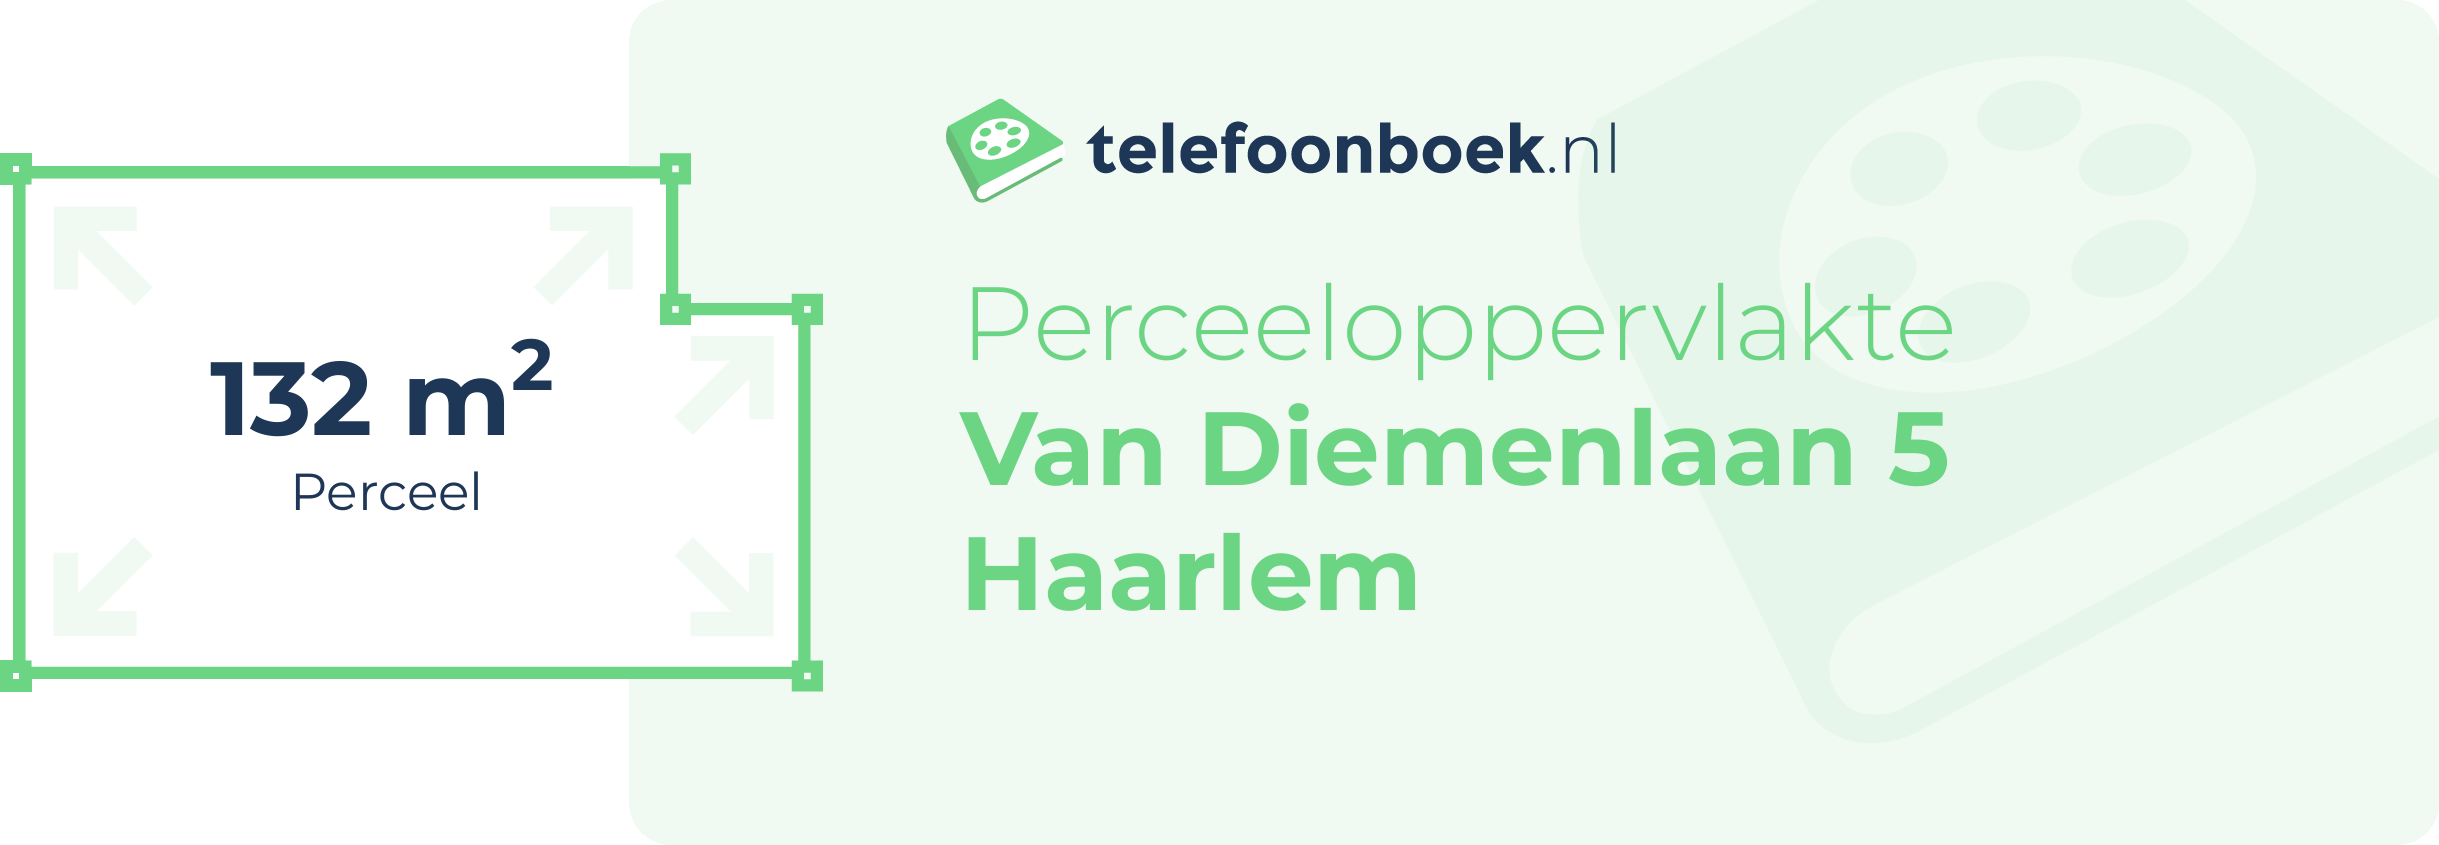 Perceeloppervlakte Van Diemenlaan 5 Haarlem